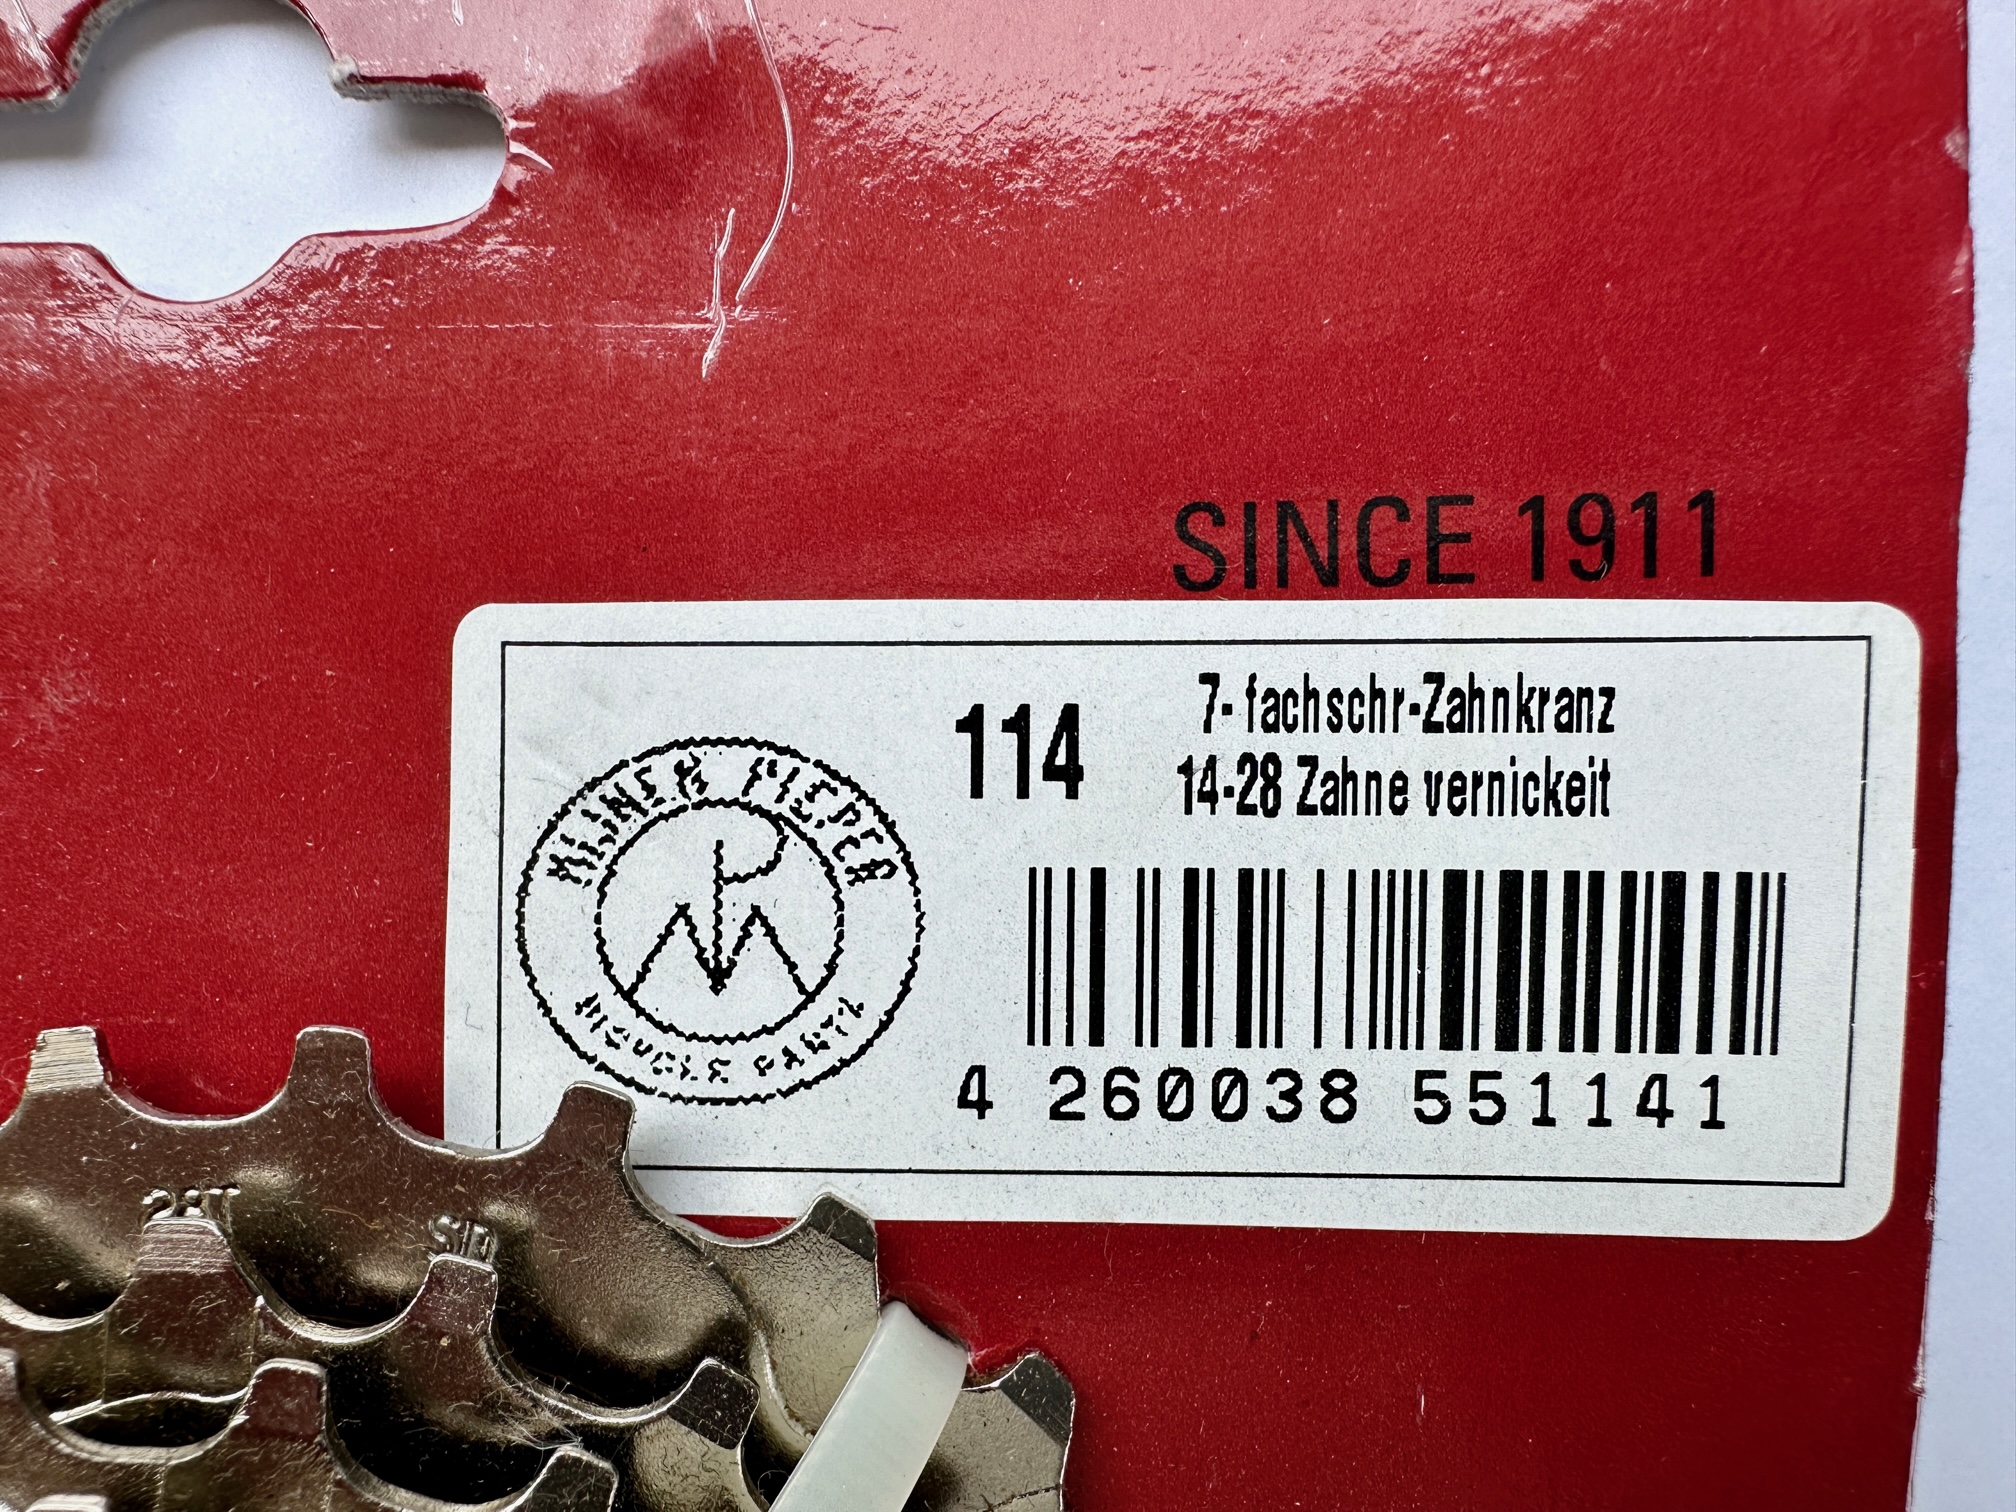 UD Cassette Mijnen Pieper freewheel screw on 7-Speed 14-28